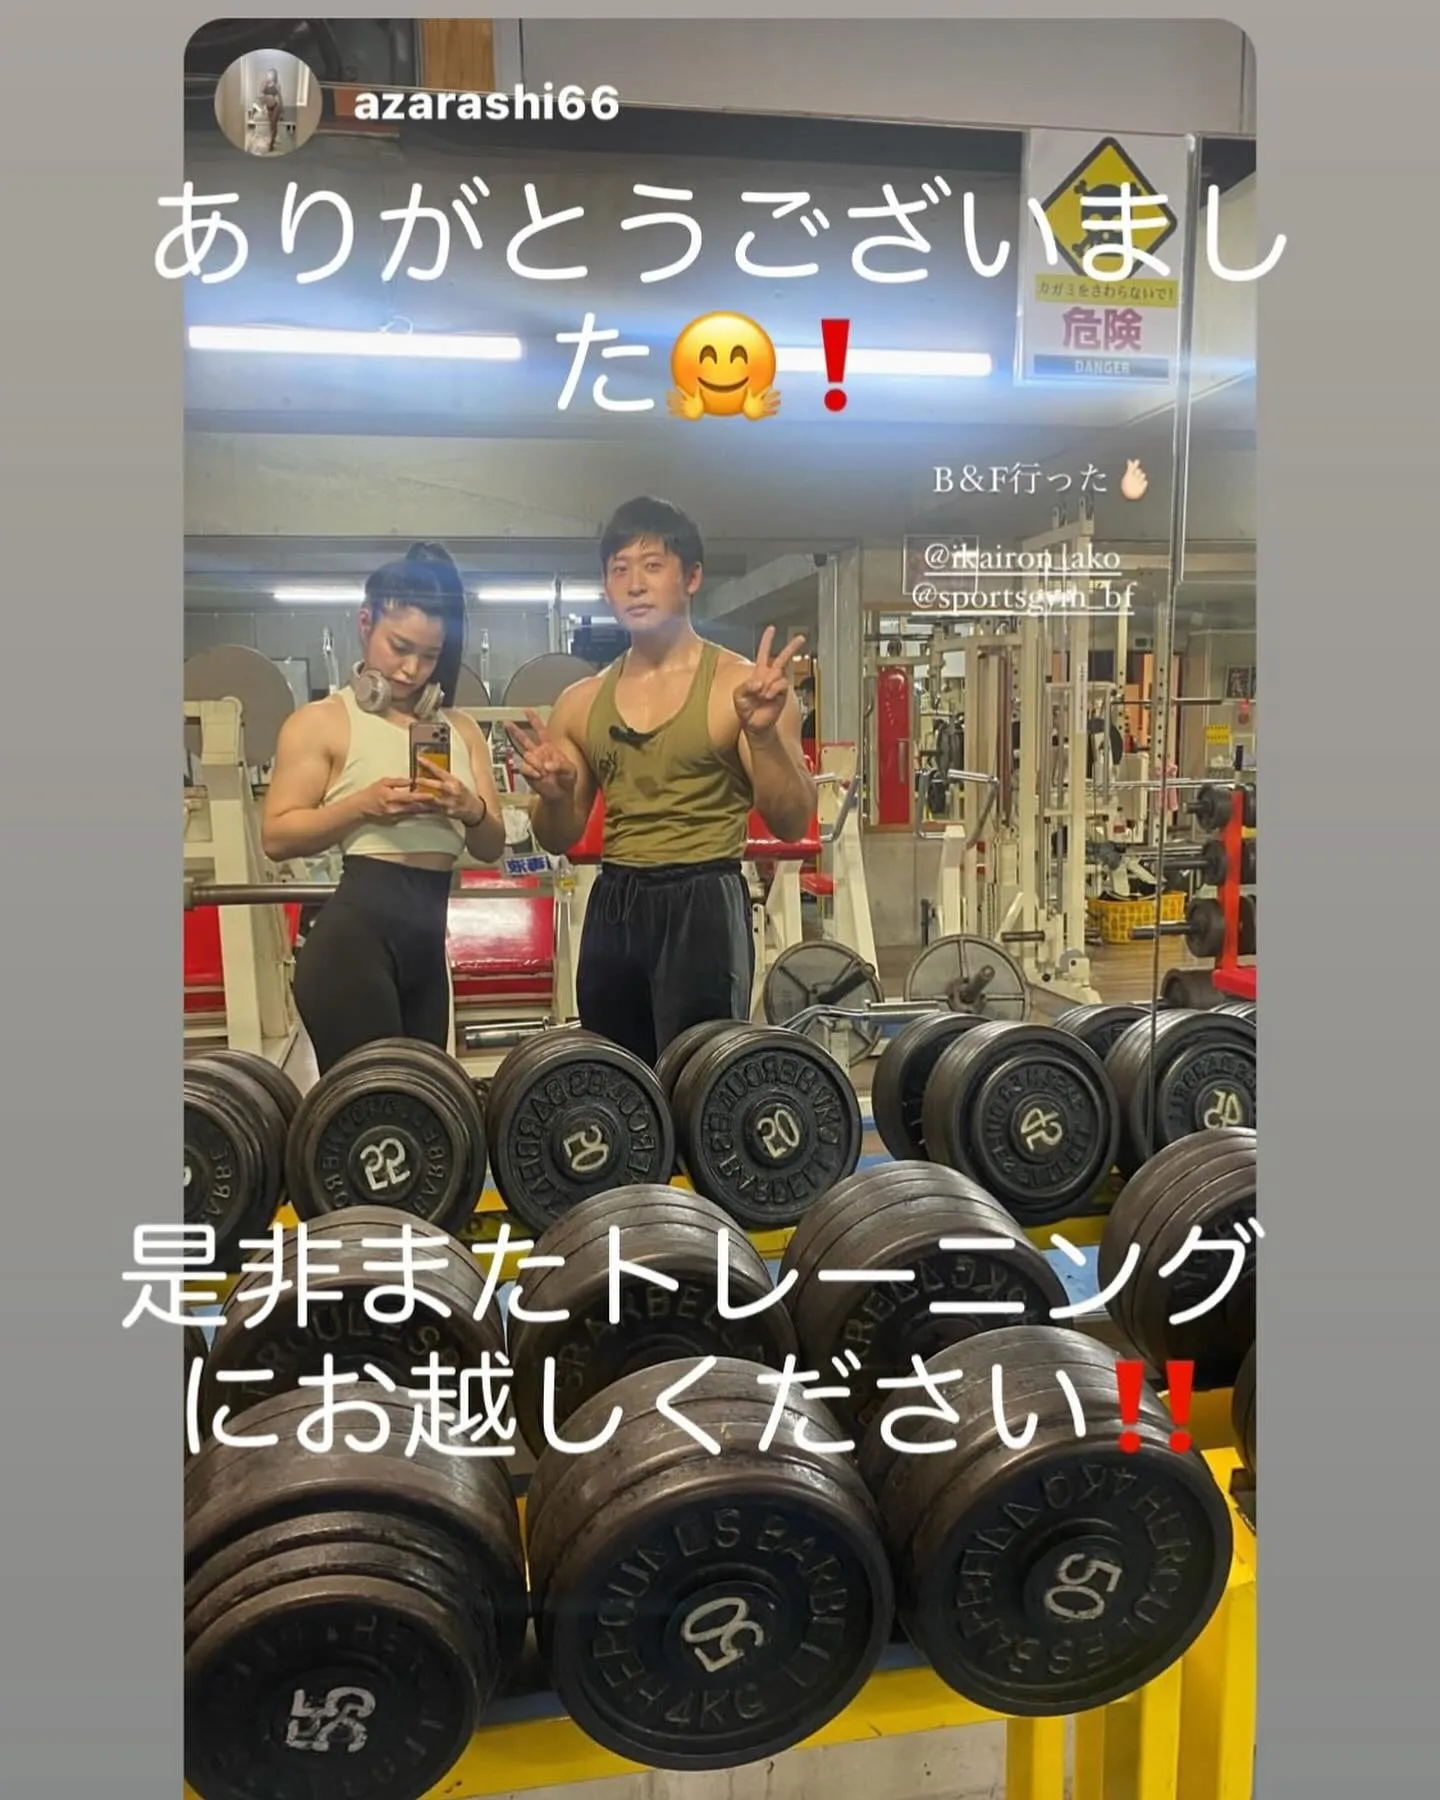 日本フィジークチャンピオン岡典明さんがB&Fでトレーニングに...